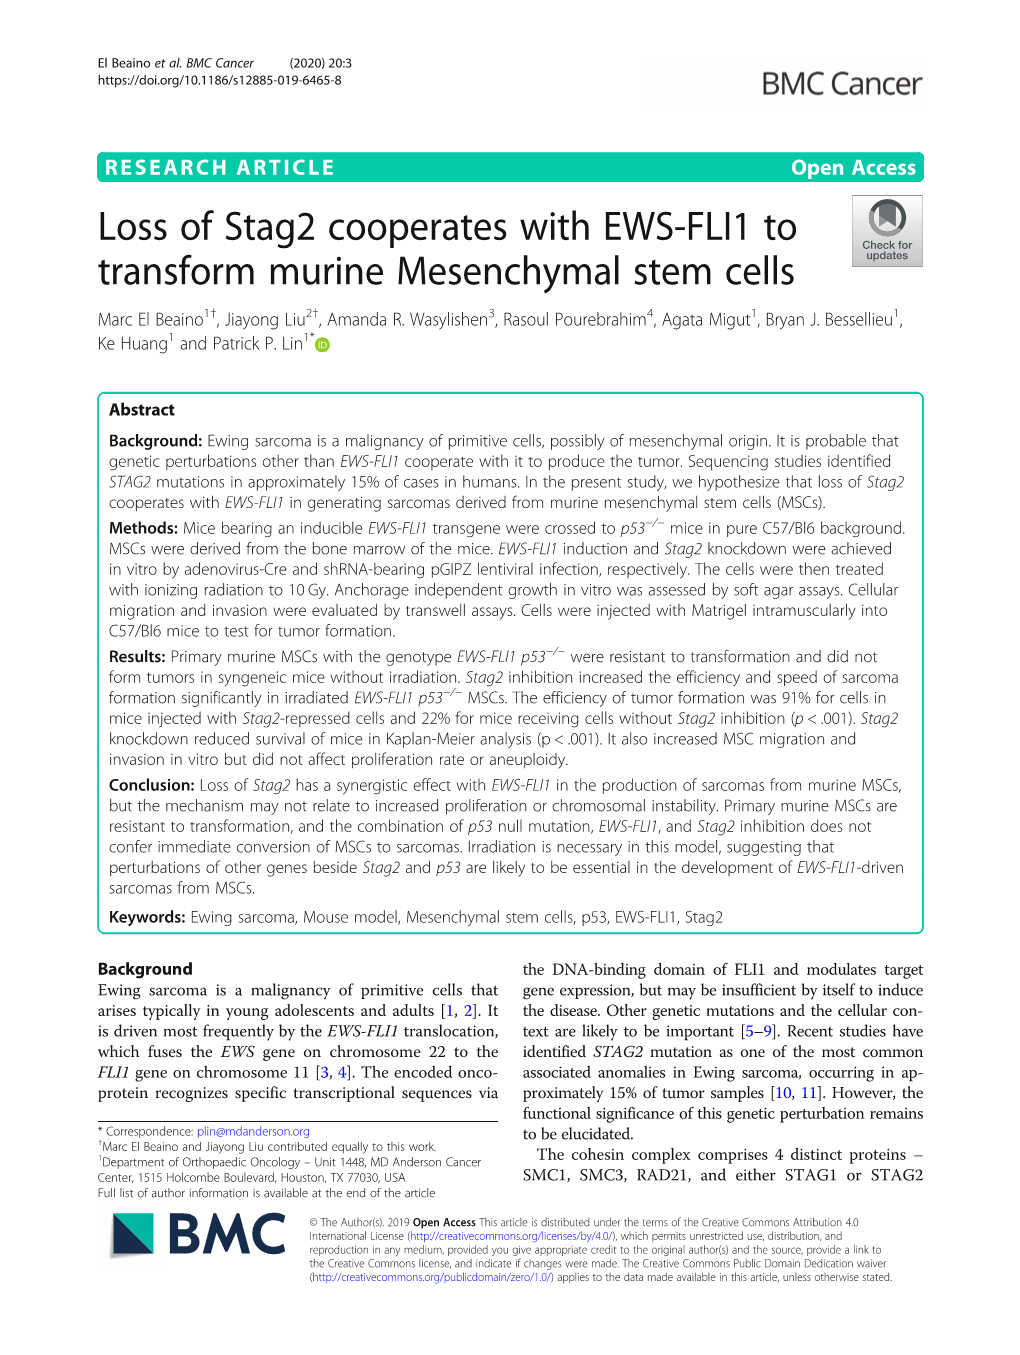 Loss of Stag2 Cooperates with EWS-FLI1 to Transform Murine Mesenchymal Stem Cells Marc El Beaino1†, Jiayong Liu2†, Amanda R